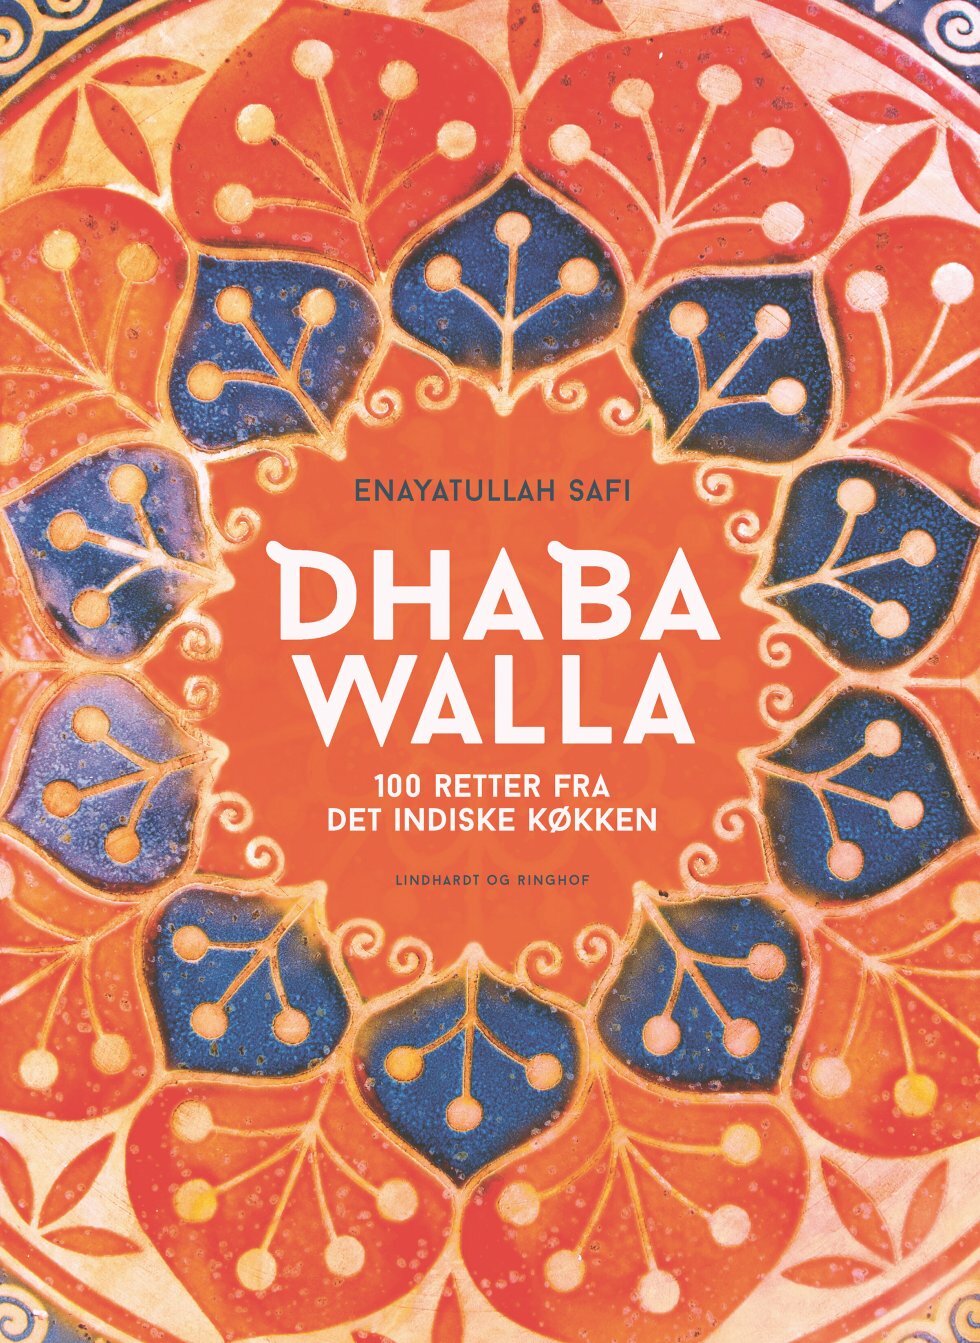 Dhaba Walla: Ny kogebog hylder det autentiske, indiske køkken